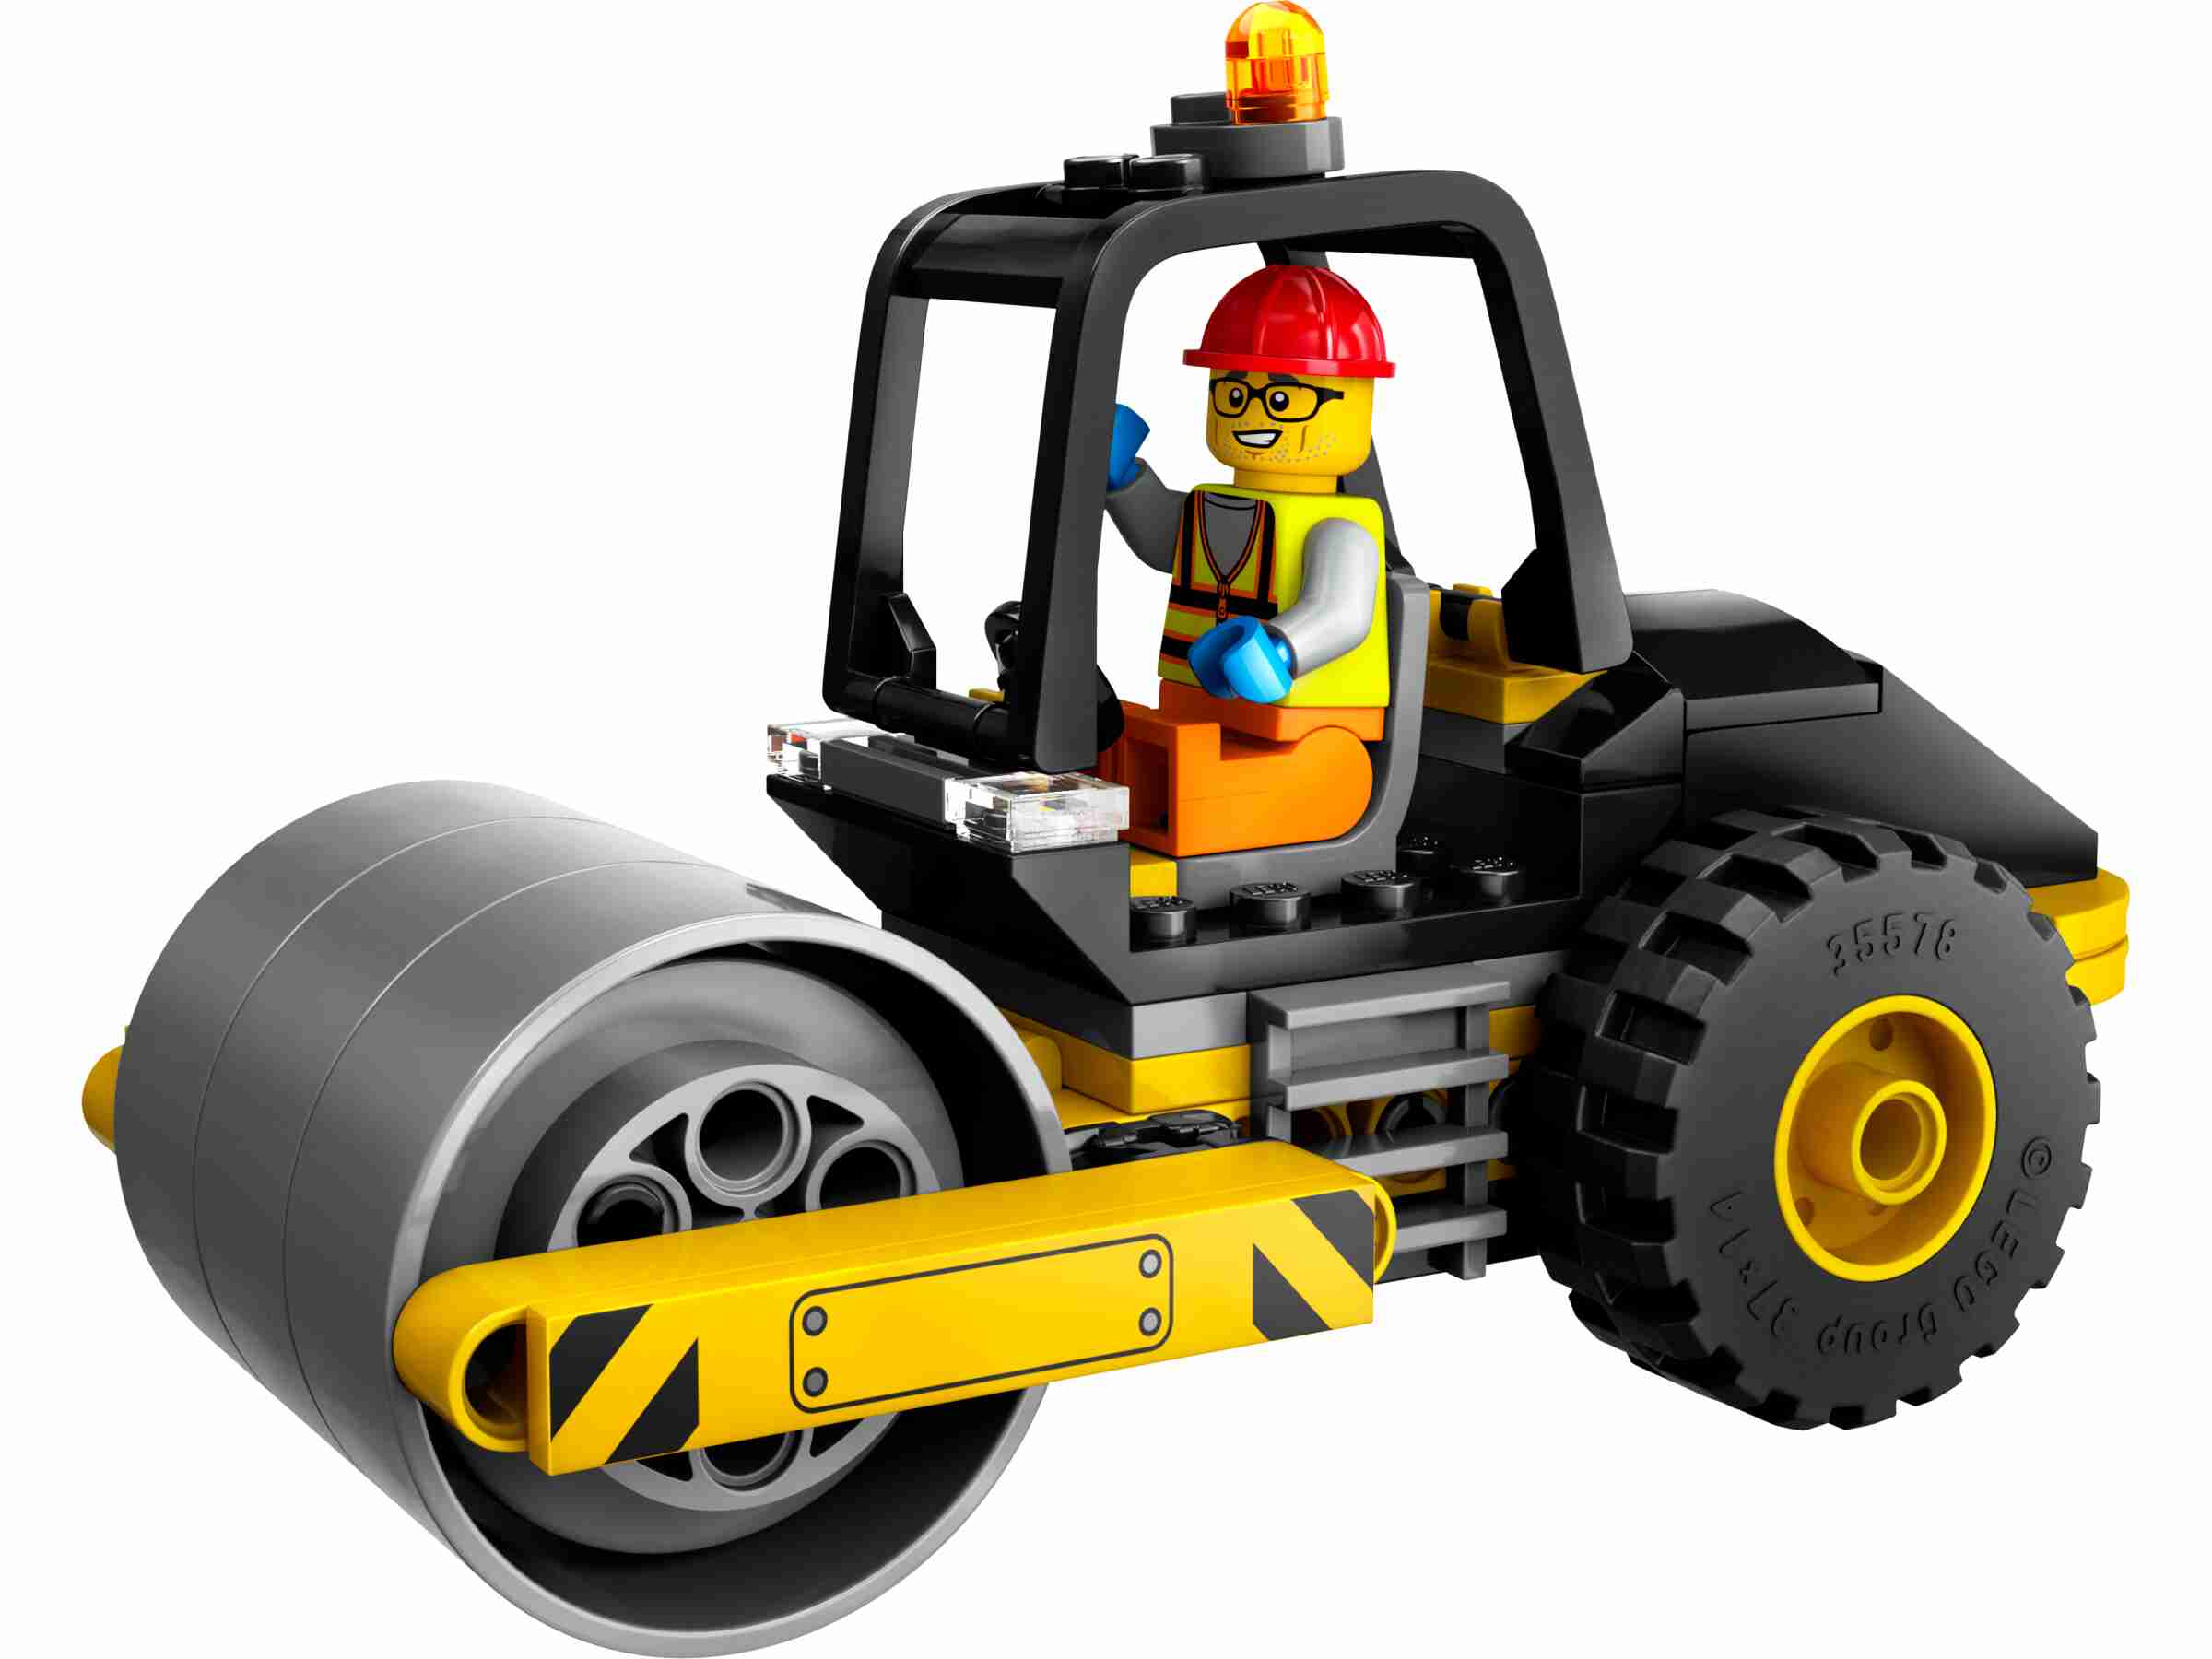 LEGO 60401 City Straßenwalze, grobstollige Reifen, Bauarbeiter-Minifigur